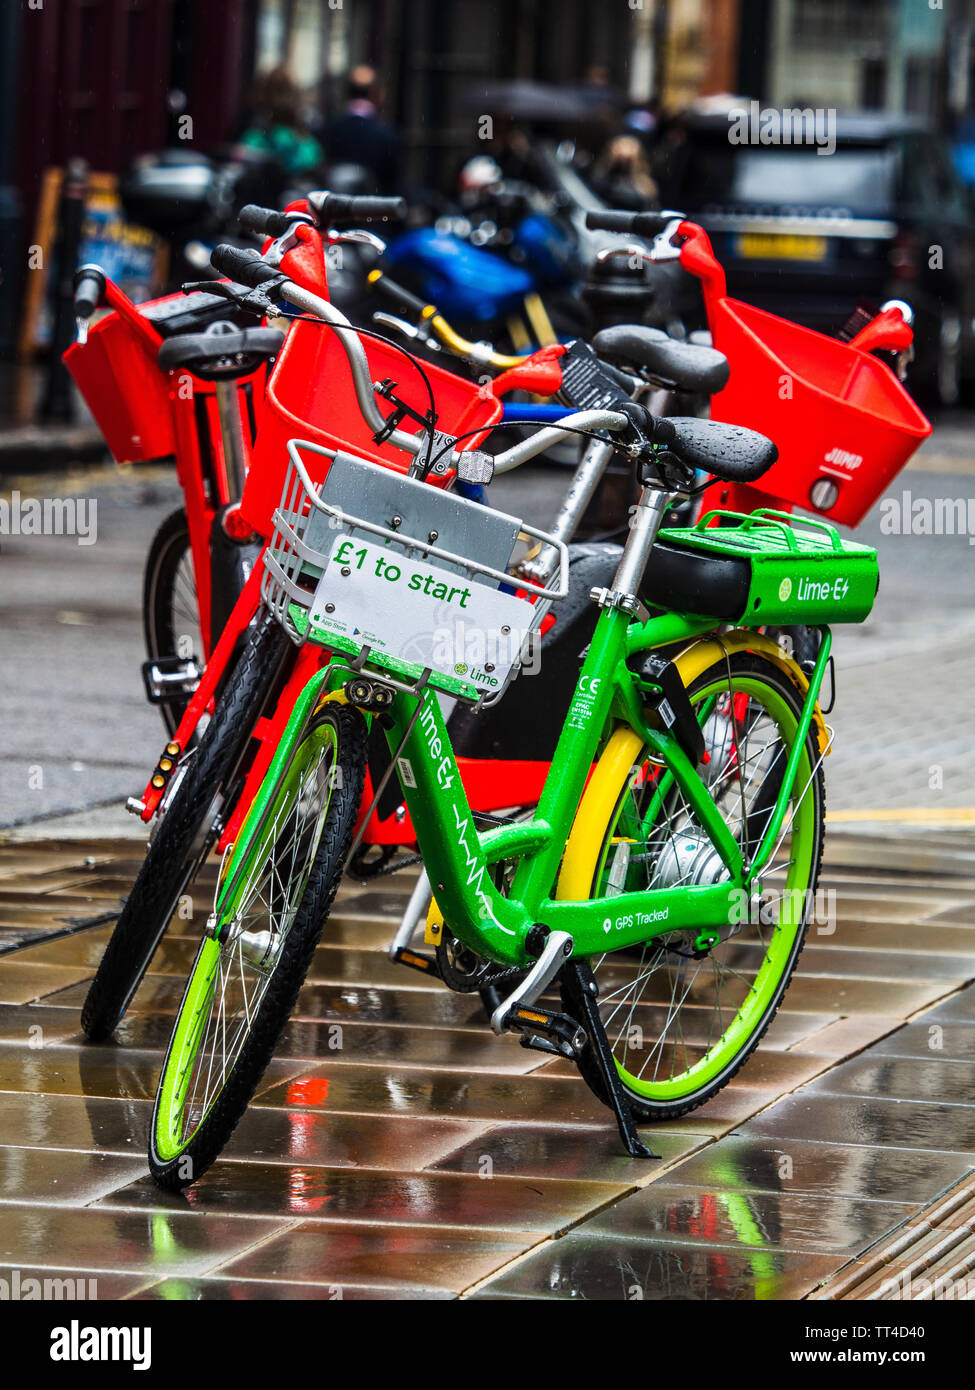 London Electric Noleggio biciclette - Lime e Jump Uber biciclette a noleggio nel centro di Londra - un certo numero di aziende stanno introducendo elettrico dockless biciclette a noleggio Foto Stock